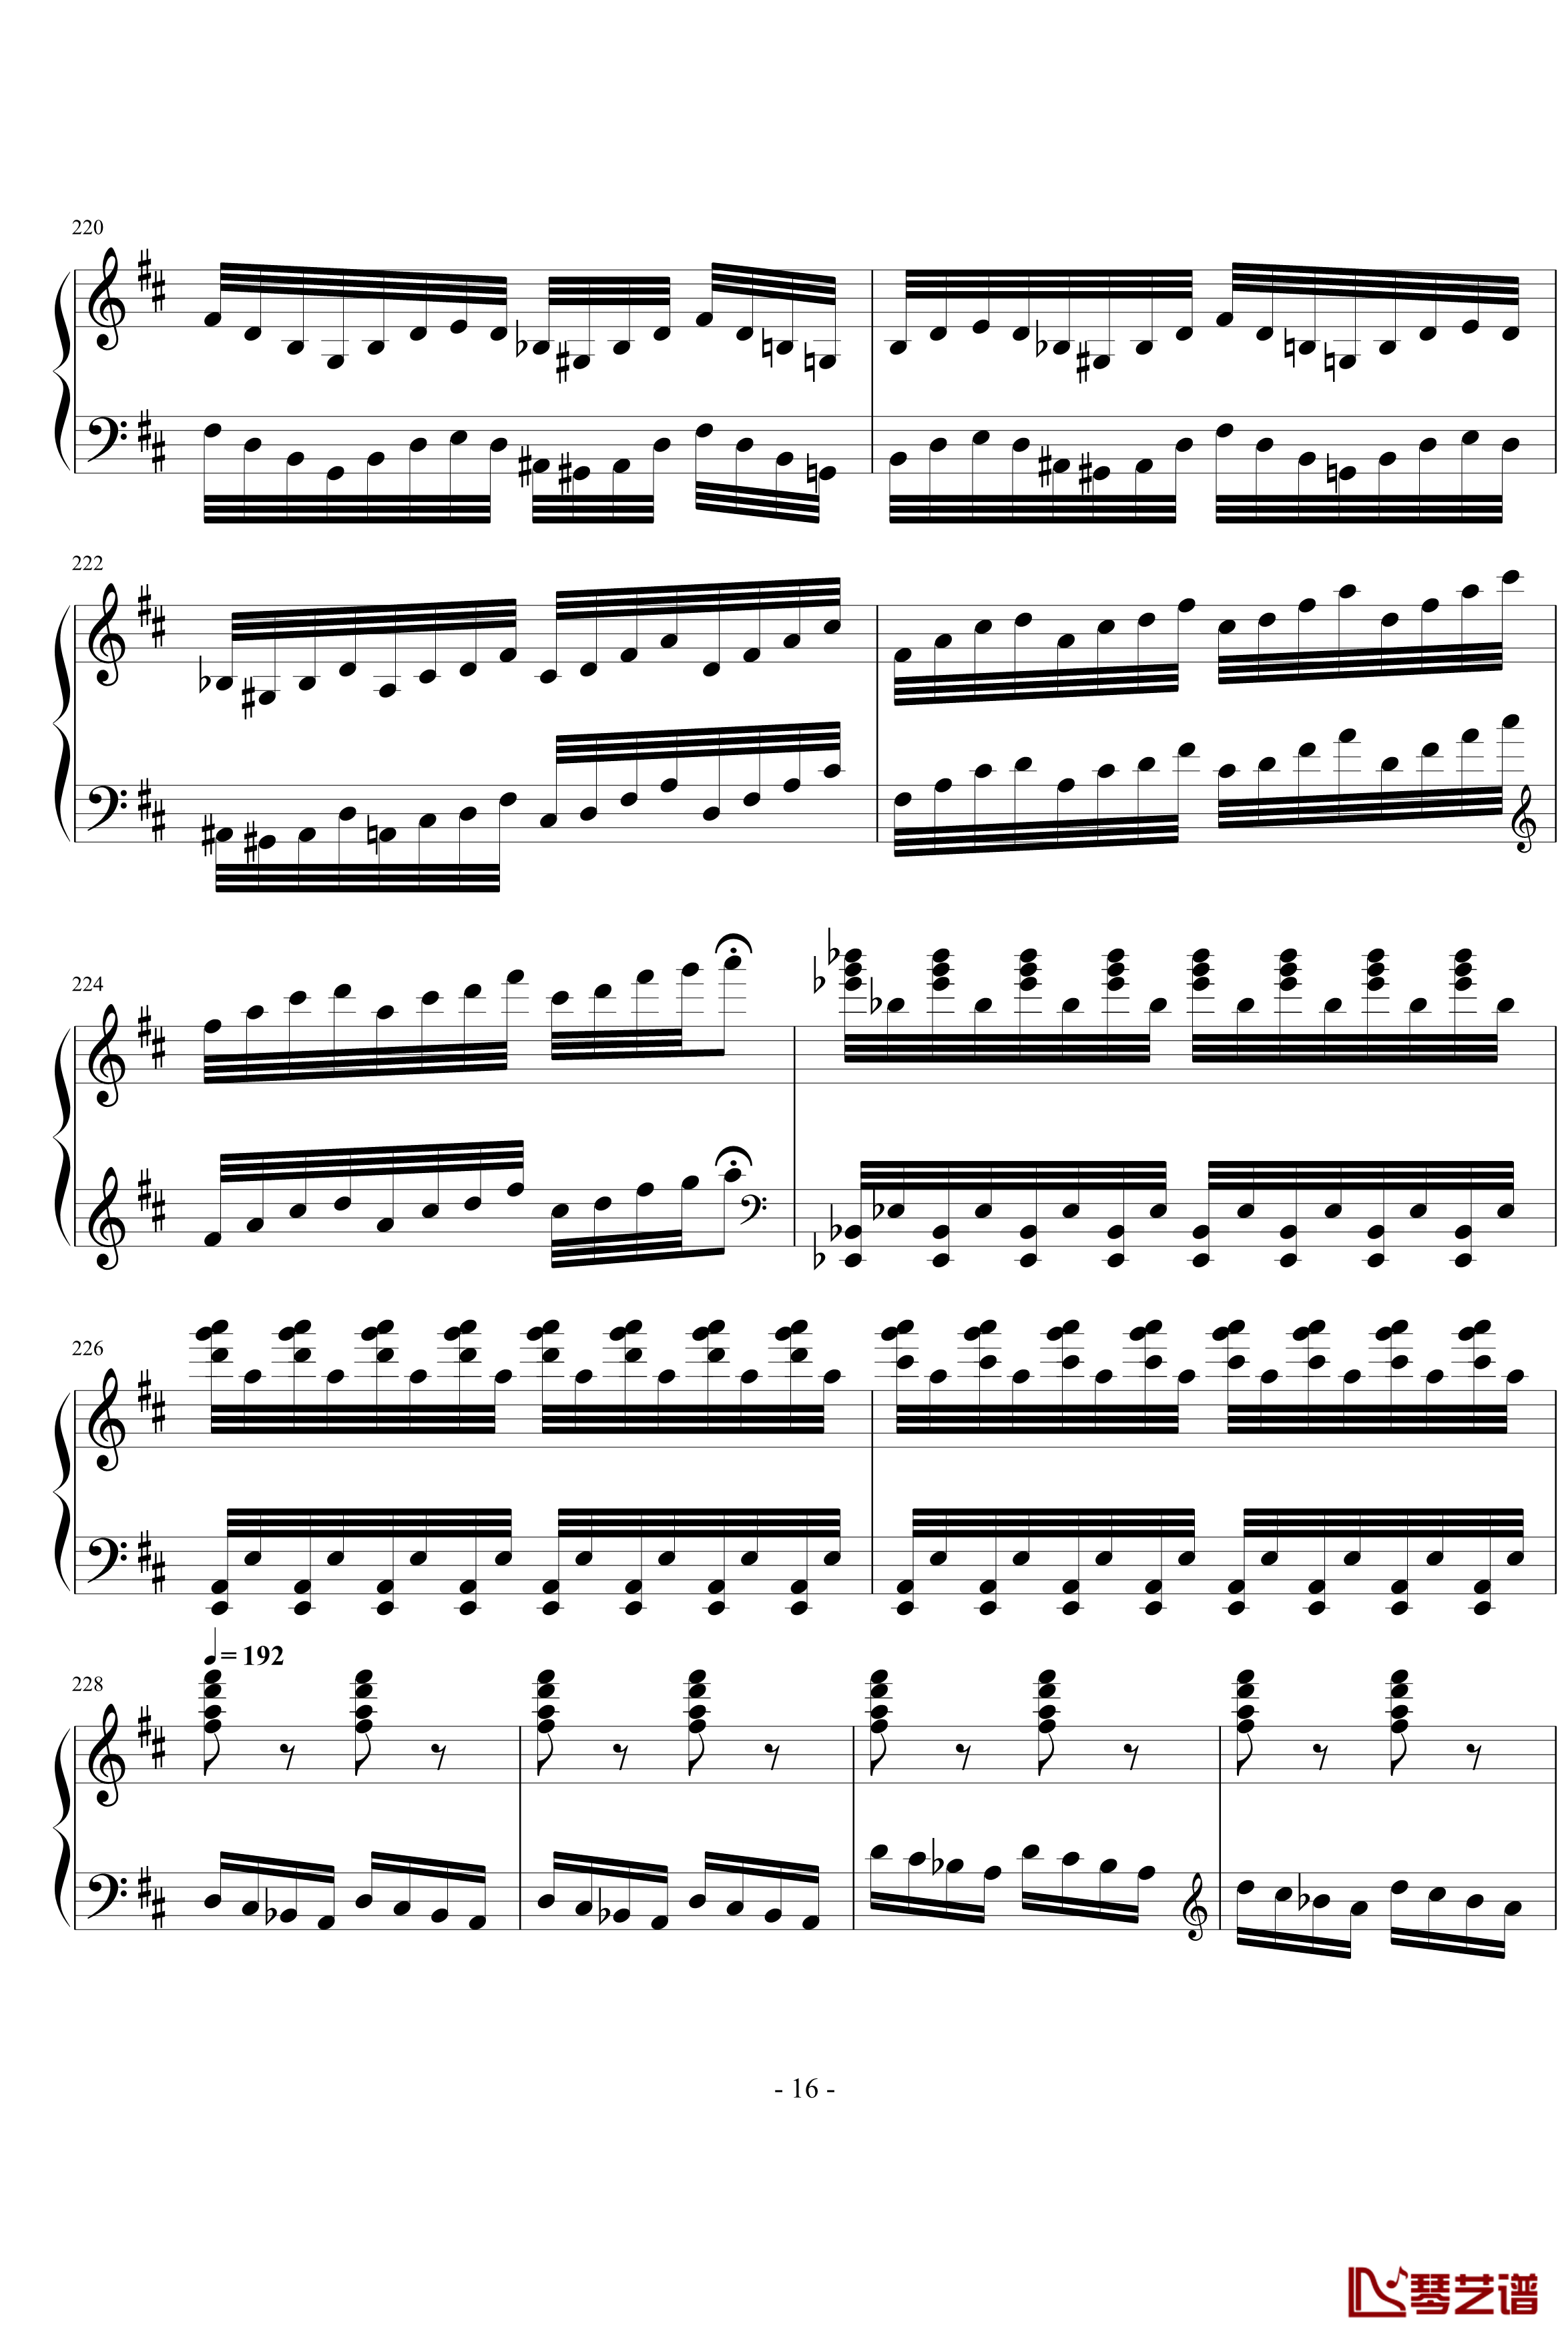 卡门幻想曲钢琴谱-世界名曲16